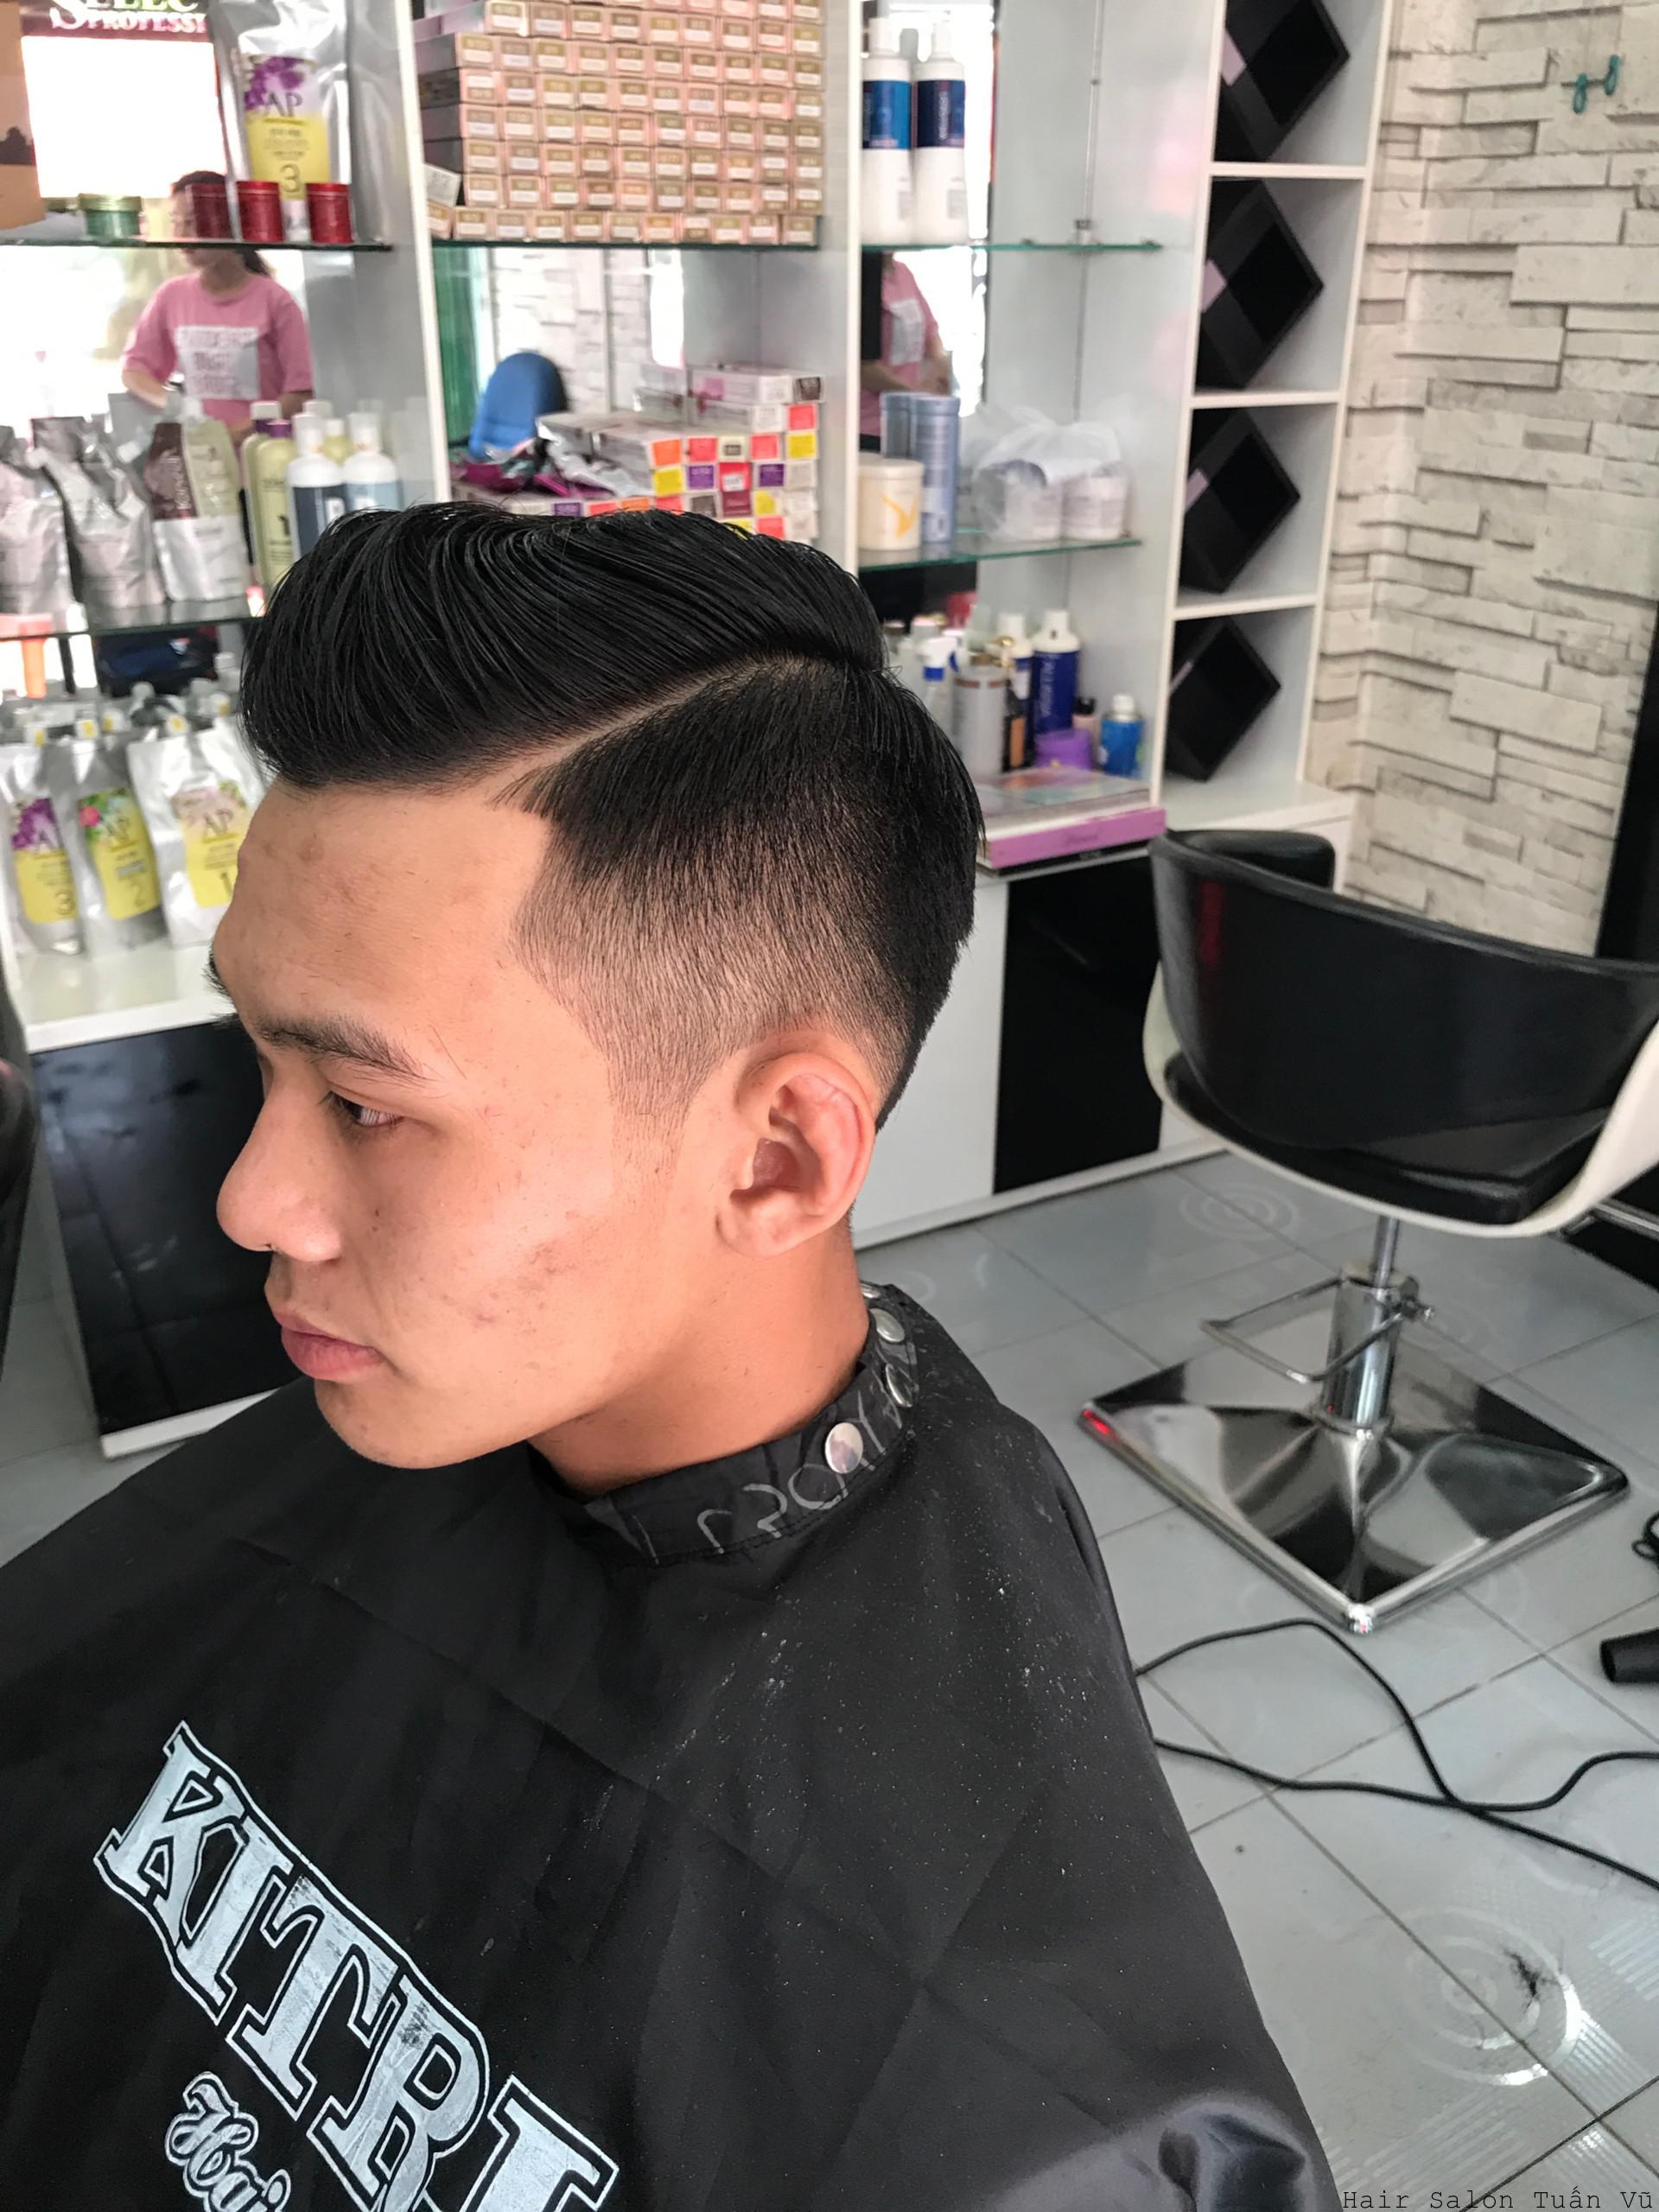 Top 6 Tiệm cắt tóc nam đẹp và chất lượng nhất TP Thủ Đức TP HCM   AllTopvn